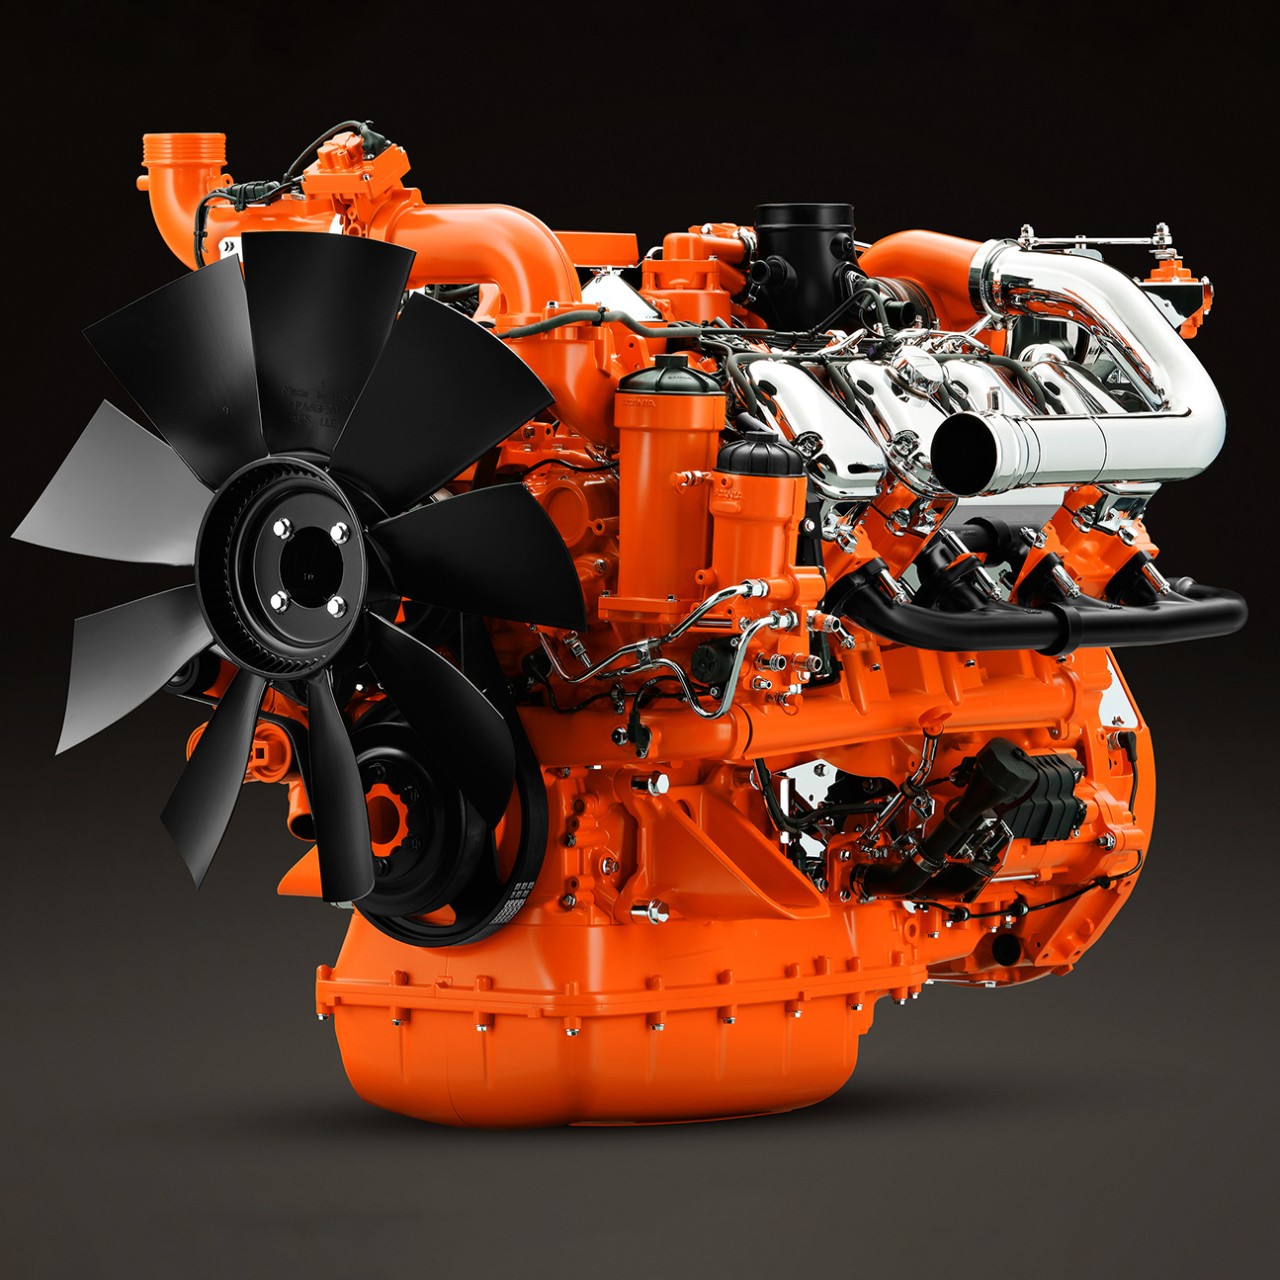  Motor de generación de energía industrial de Scania de 16 litros